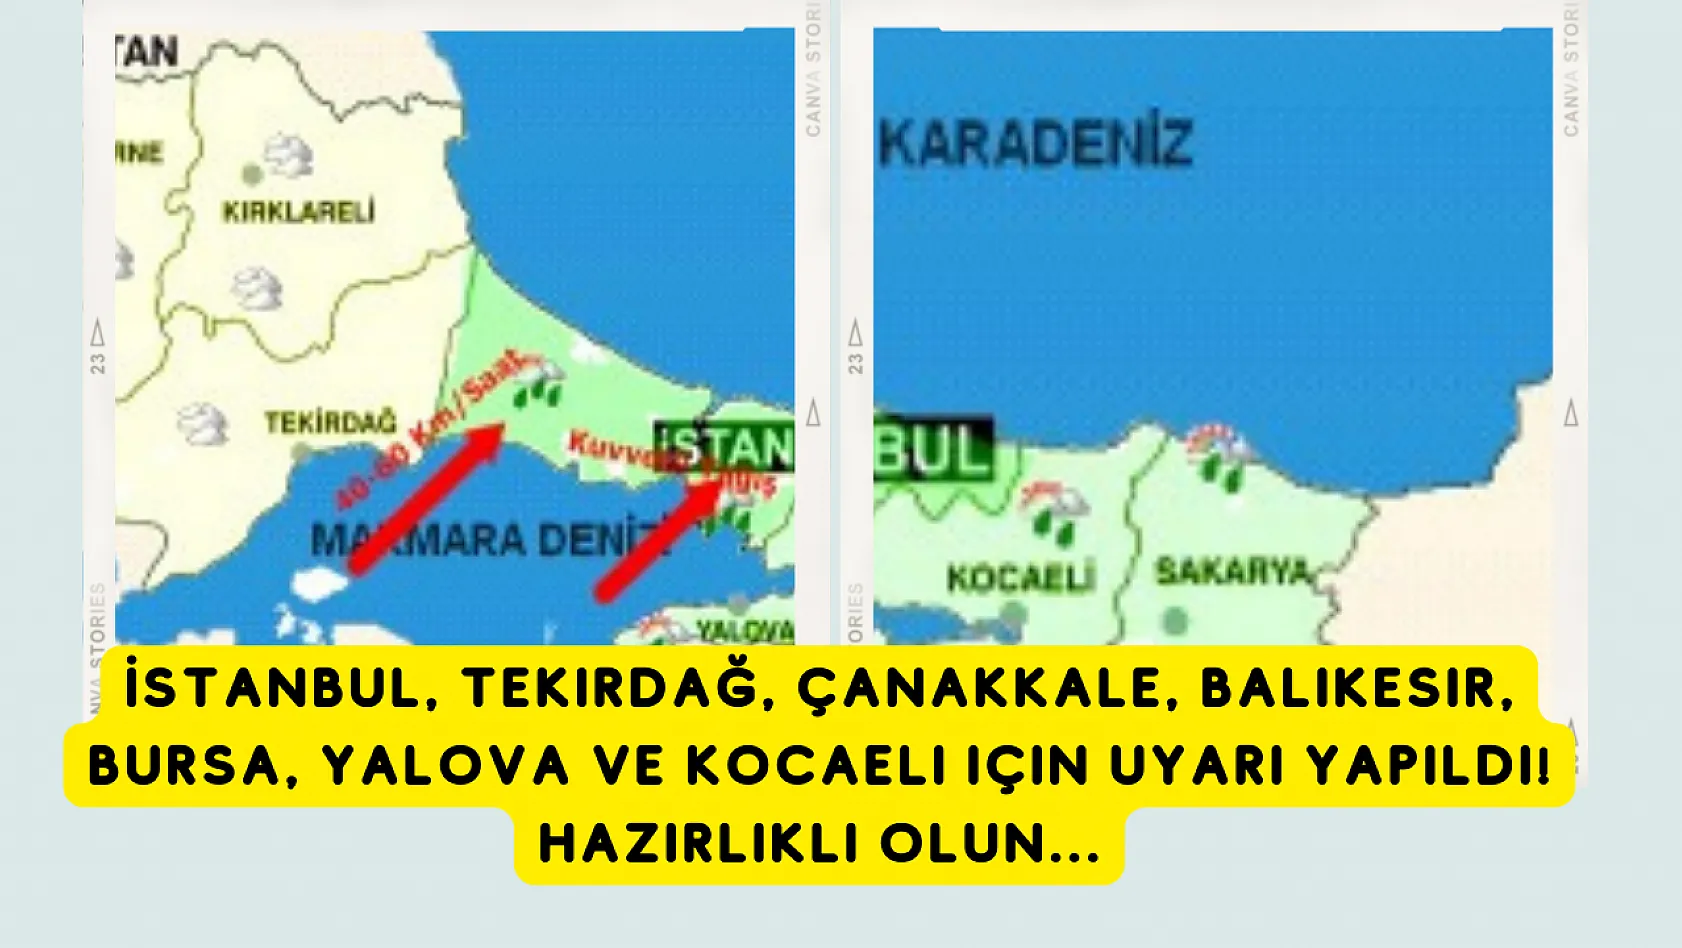 İstanbul, Tekirdağ, Çanakkale, Balıkesir, Bursa, Yalova ve Kocaeli için uyarı yapıldı! Hazırlıklı olun...